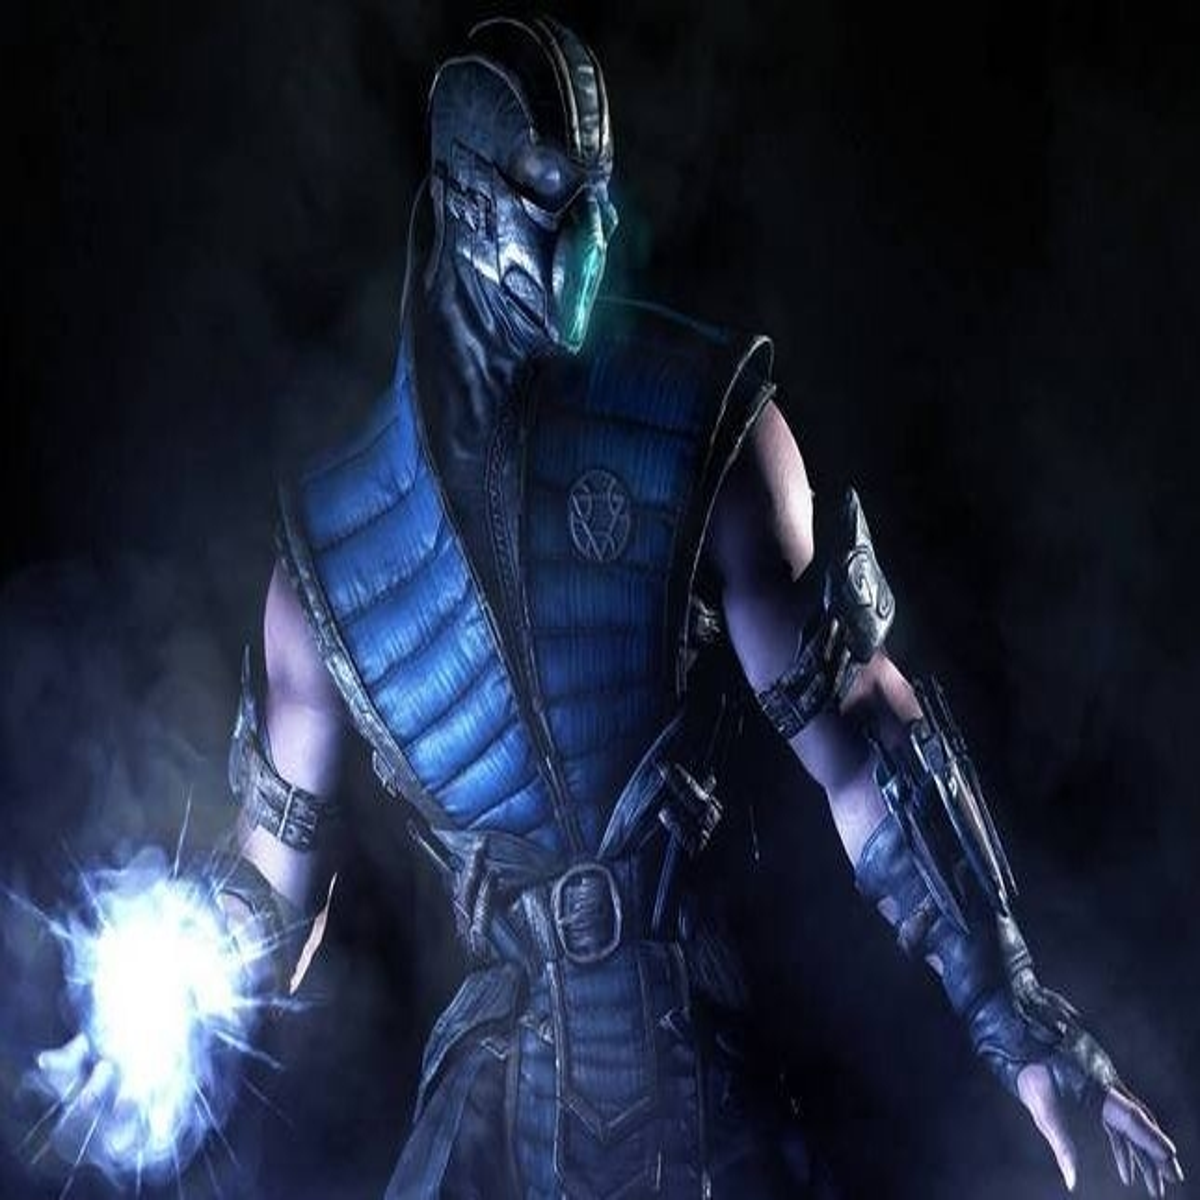 Lista com personagens confirmadas para Mortal Kombat X até agora